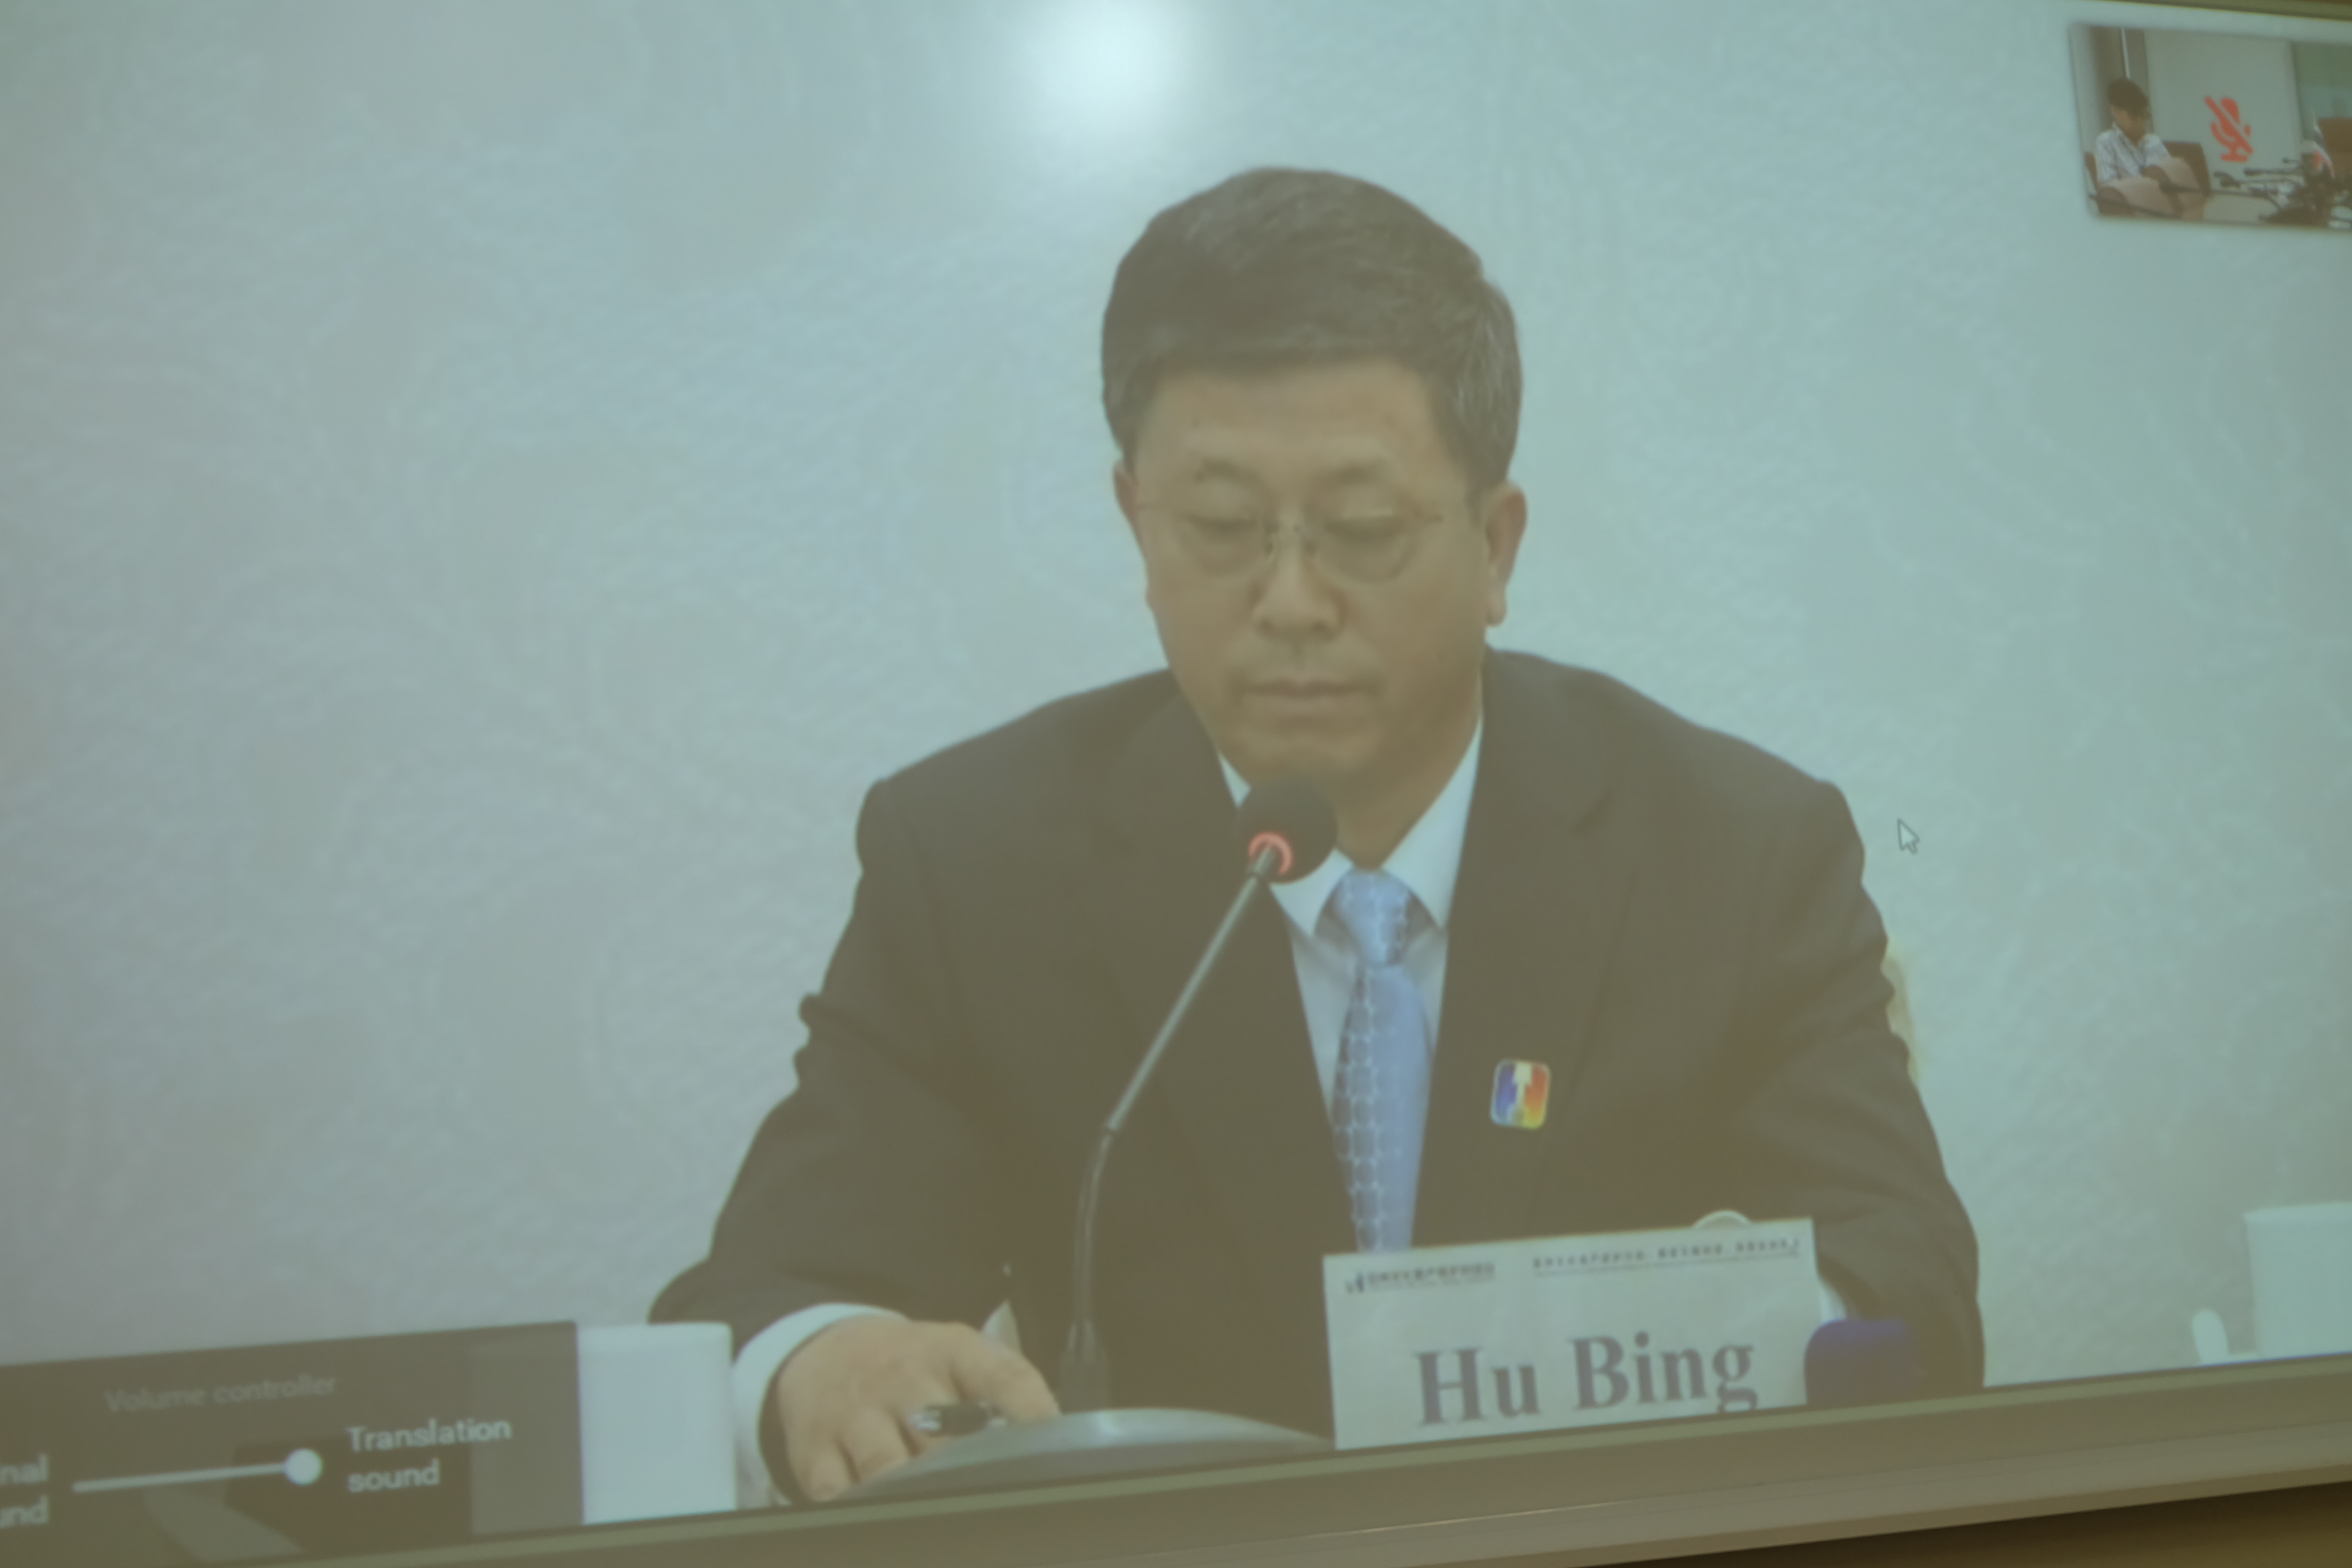 คำกล่าว และแถลงการณ์โดย นาย Hu Bing รองประธานกรรมาธิการมรดกวัฒนธรรมแห่งชาติ สาธารณรัฐประชาชนจีน